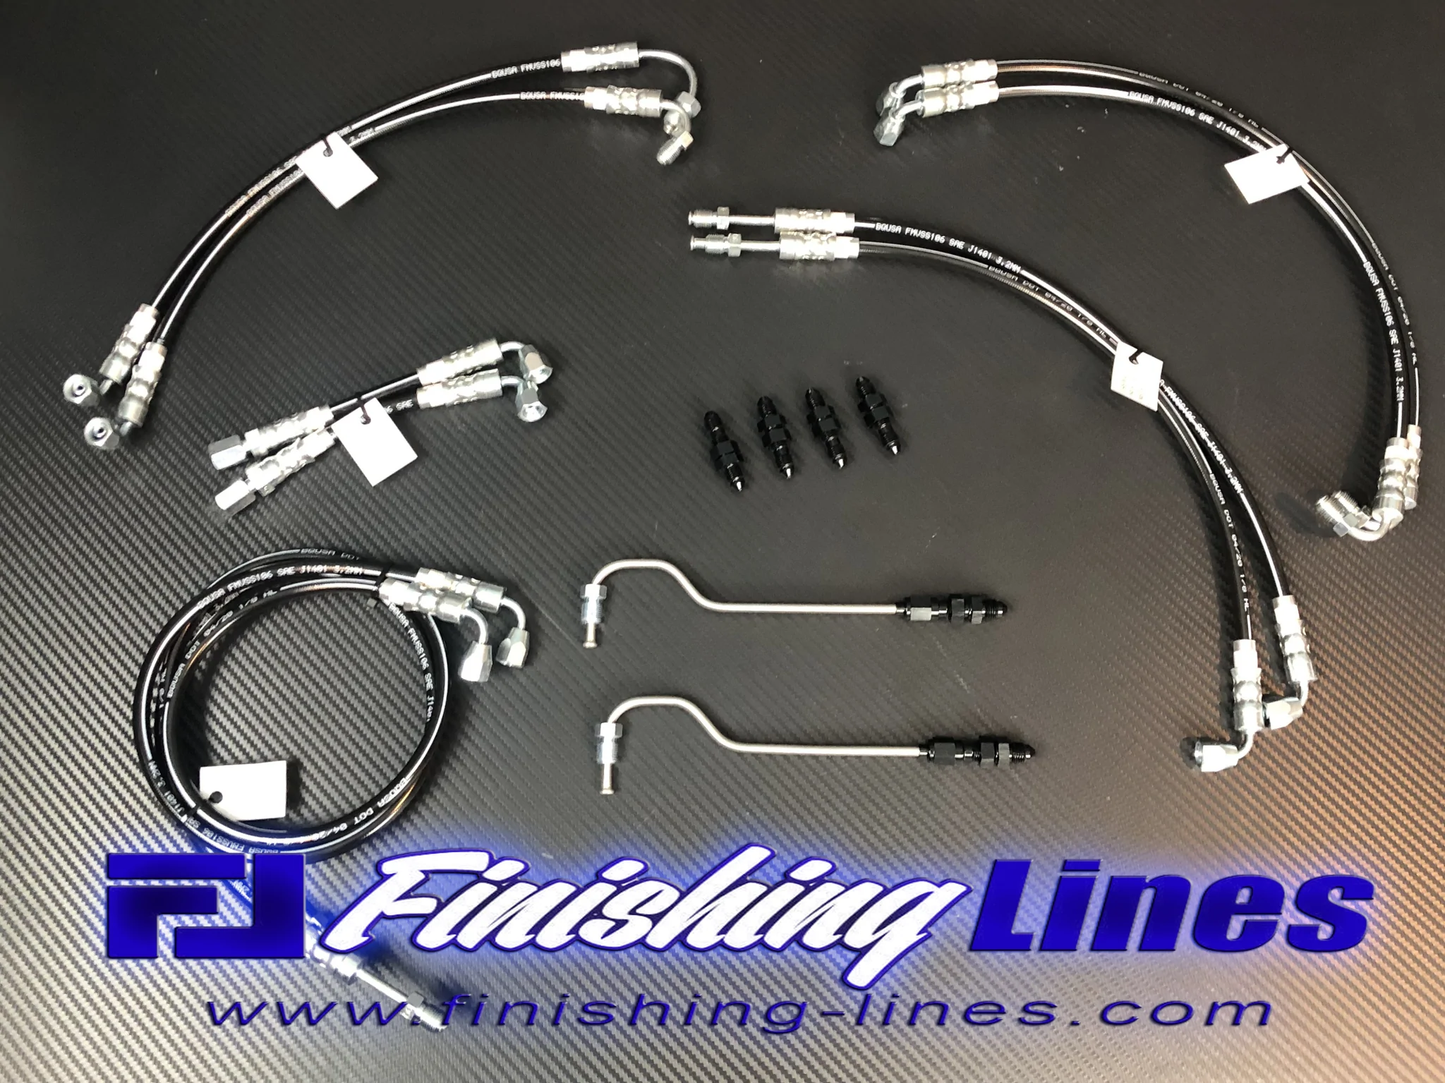 Finishing Lines - EG Full Tuck Brake Line Kit (stock master cylinder setup)